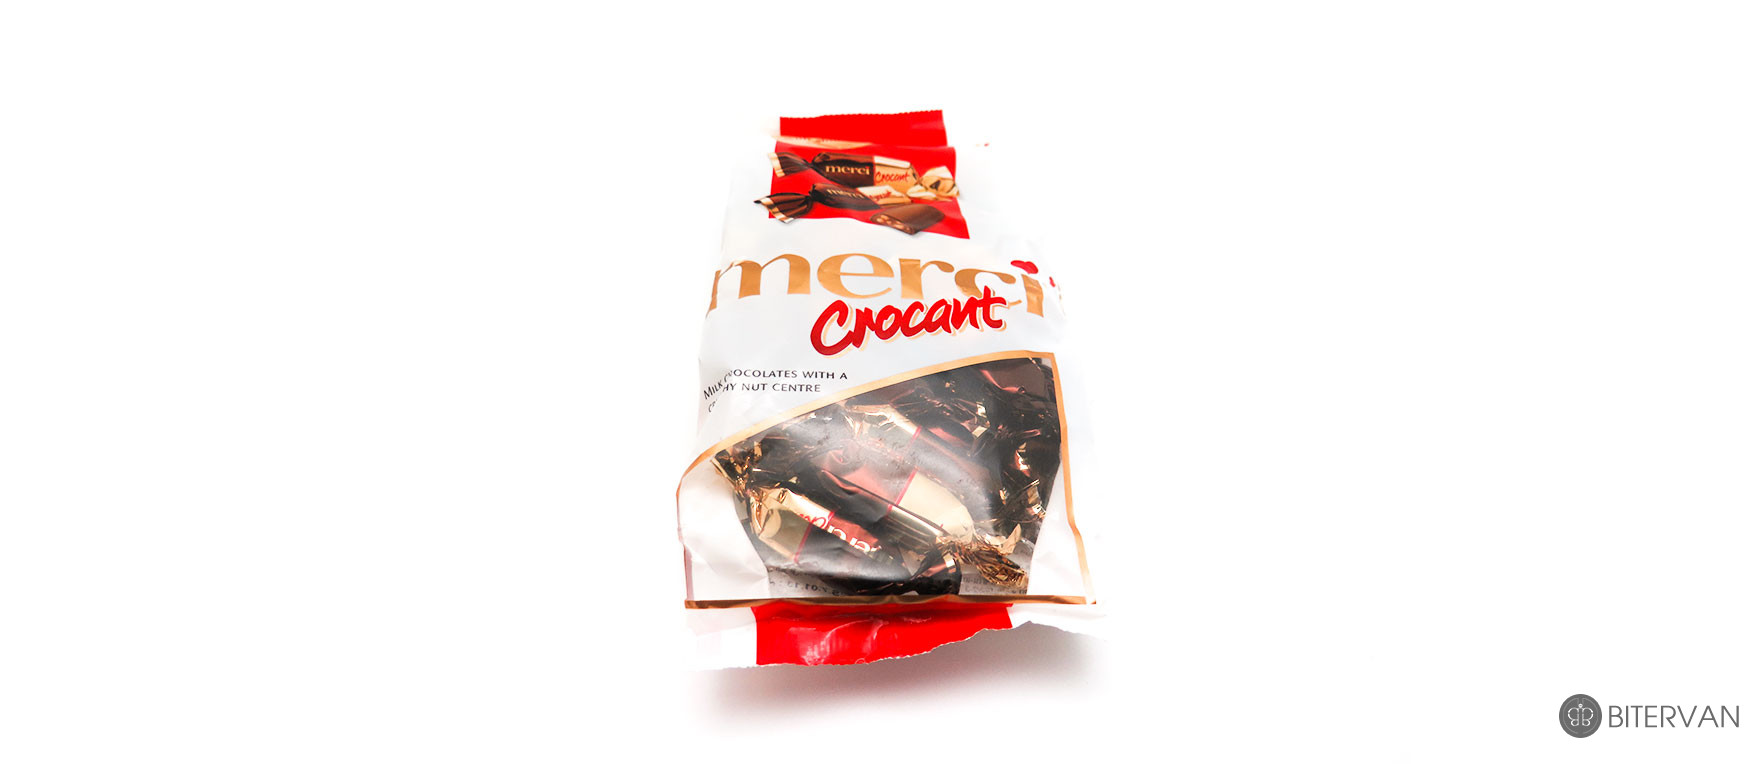 merci Crocant- Milk chocolates with a crunchy nut centre